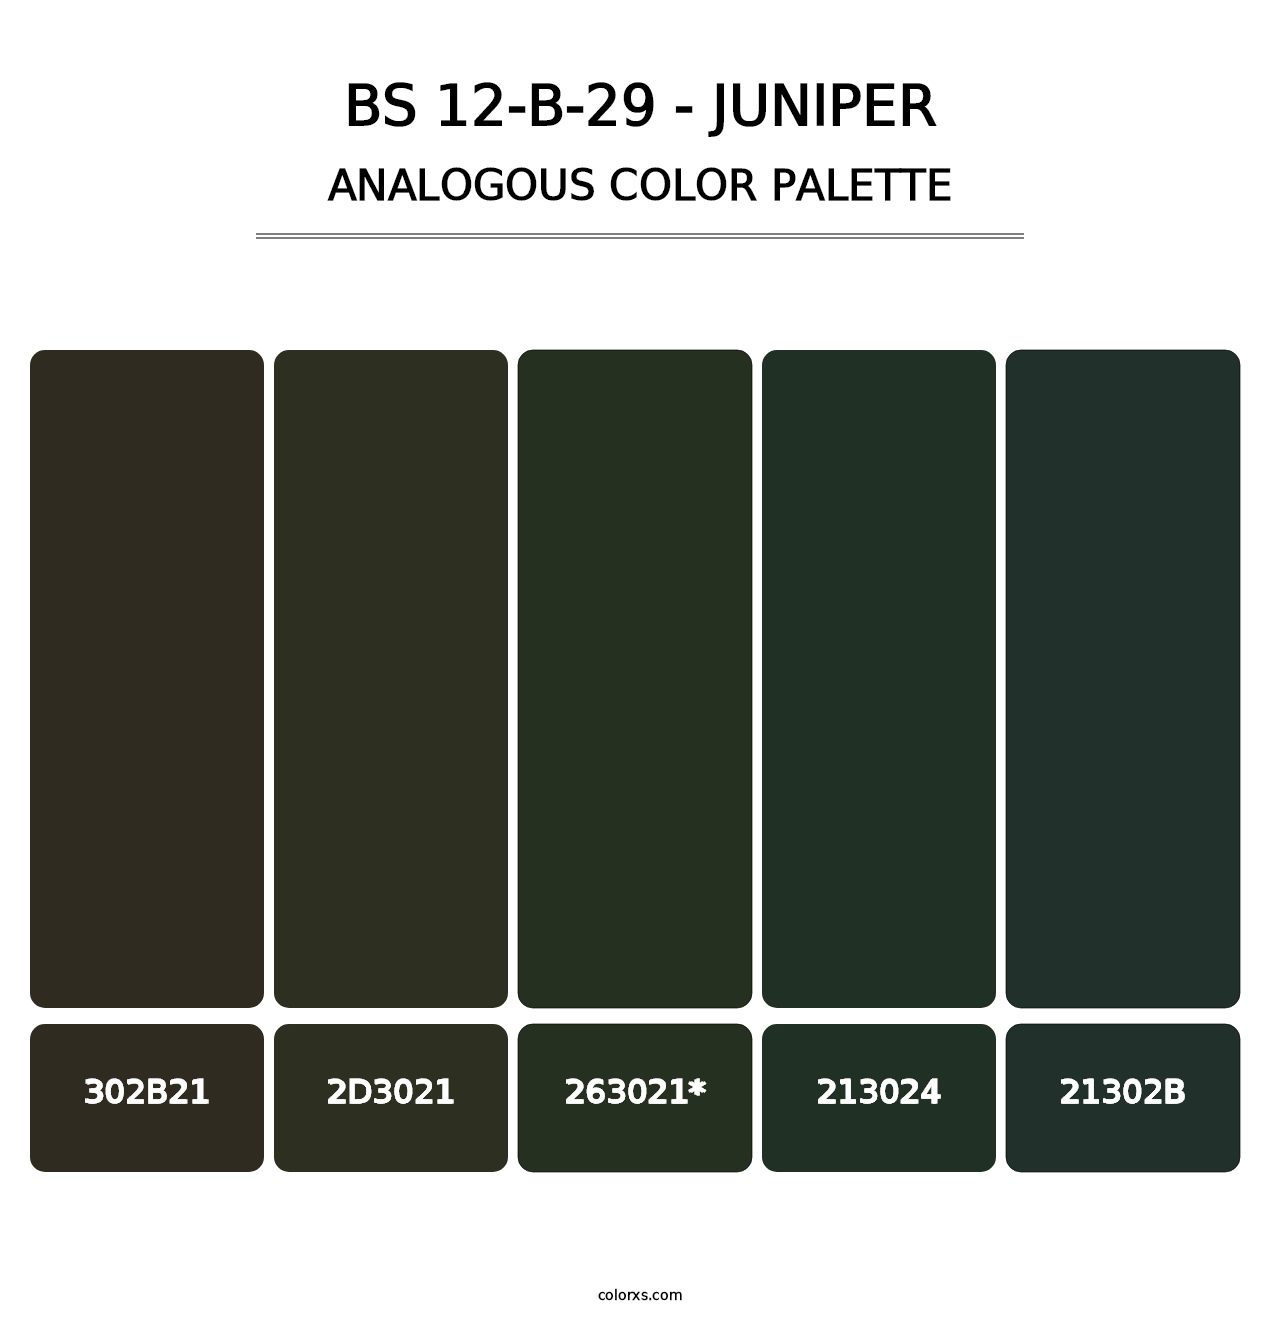 BS 12-B-29 - Juniper - Analogous Color Palette